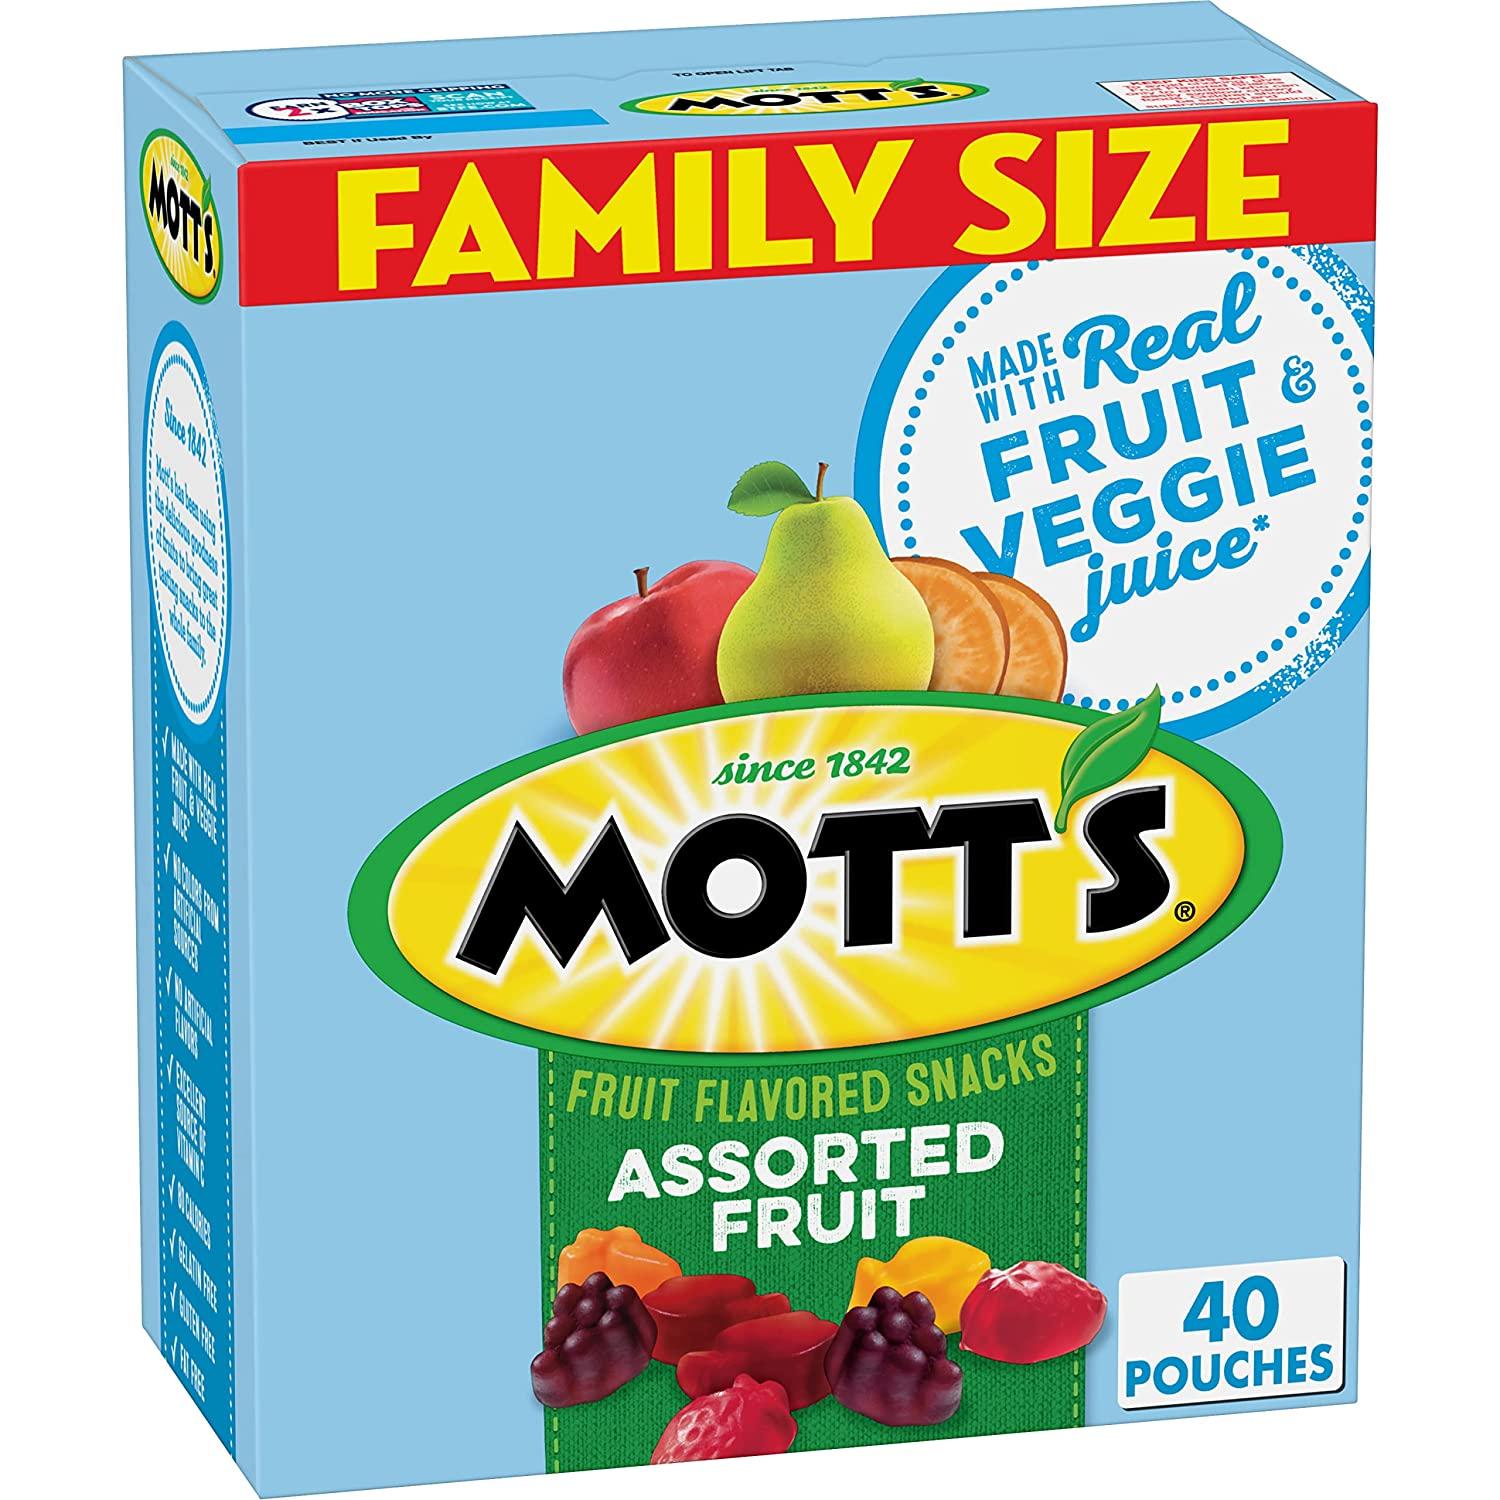 Motts Fruit Flavored Snacks 40 Pack for $5.06 Shipped